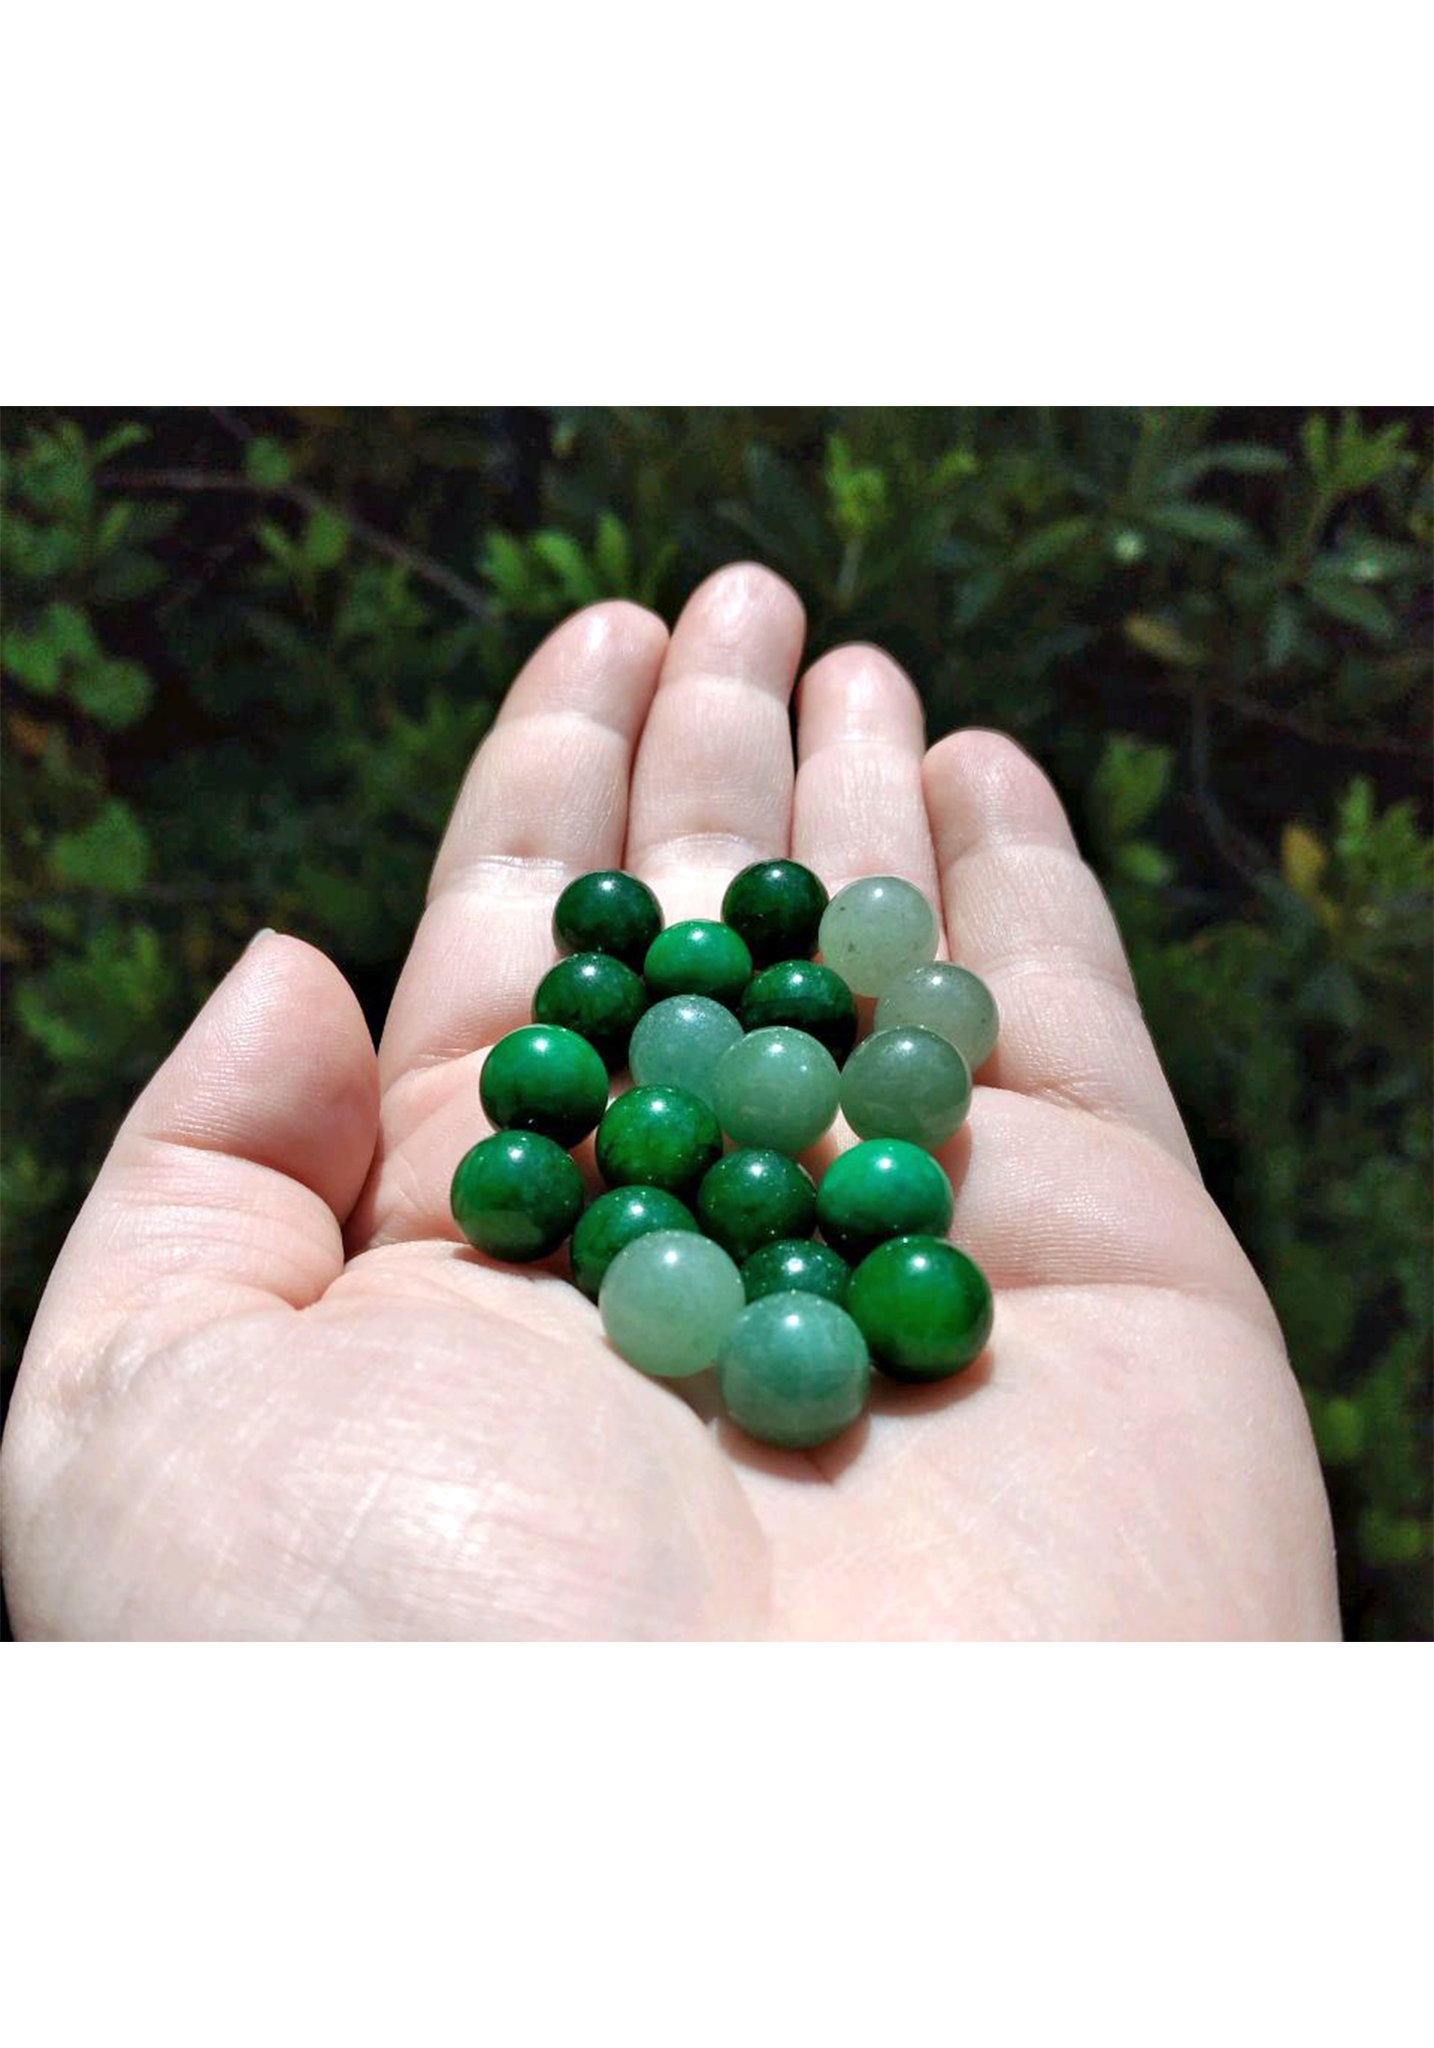 Green Aventurine Natural Gemstone Orb Marble - 10mm Sphere